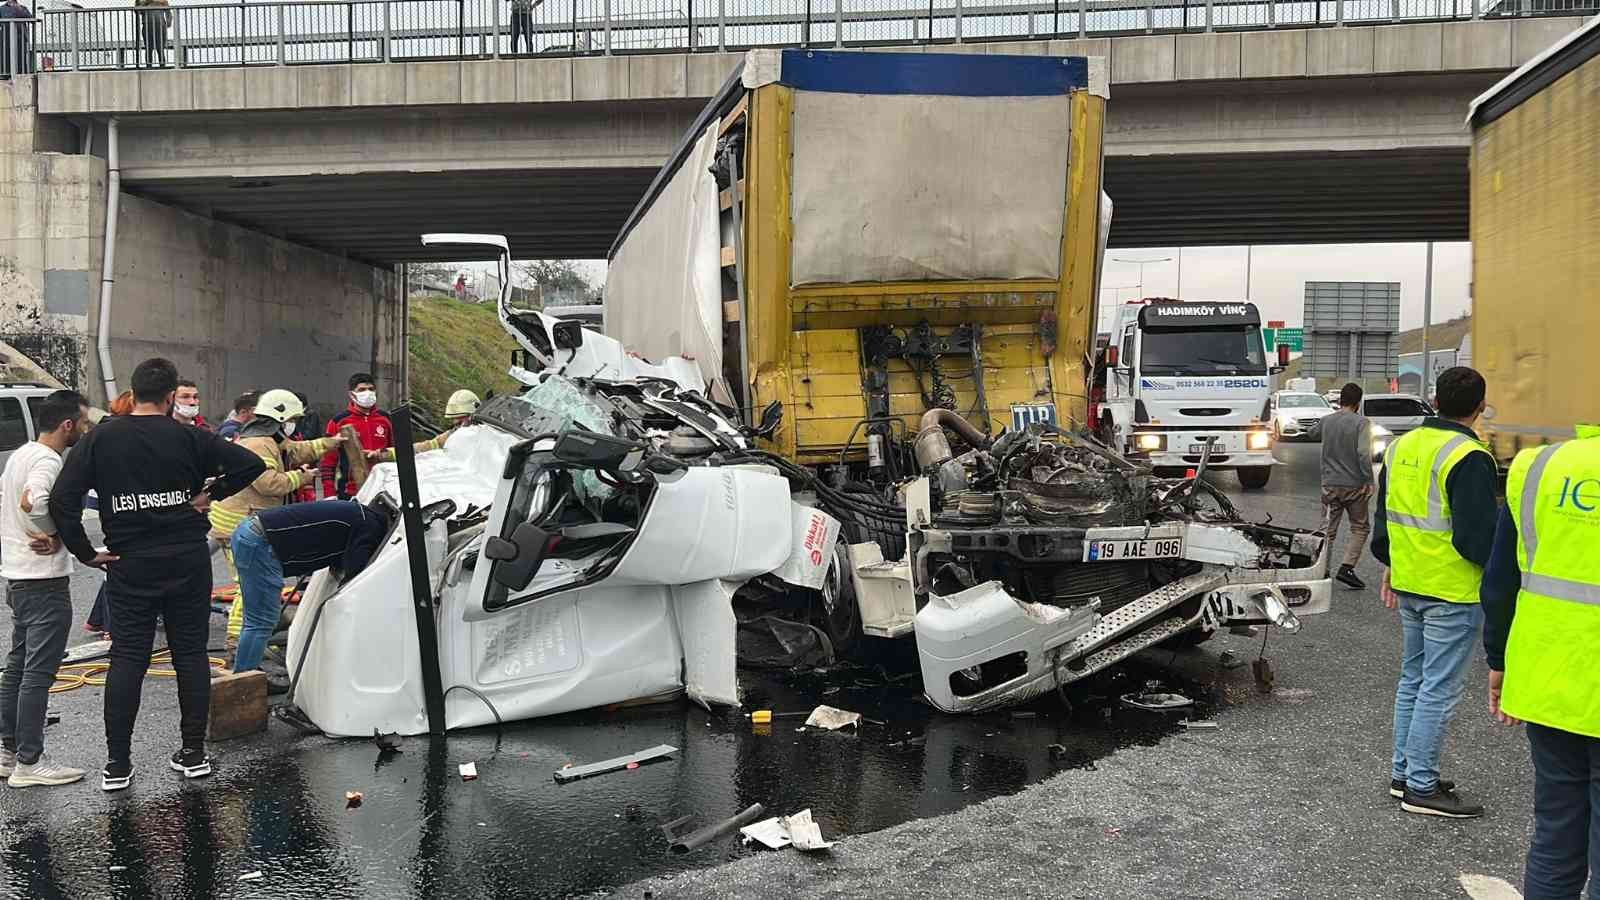 Sancaktepe Kuzey Marmara Otoyolu’nda tırın karıştığı trafik kazası meydana geldi. Tır içerisinde sıkışan yaralı sürücüyü kurtarma çalışmaları sürüyor. #istanbul